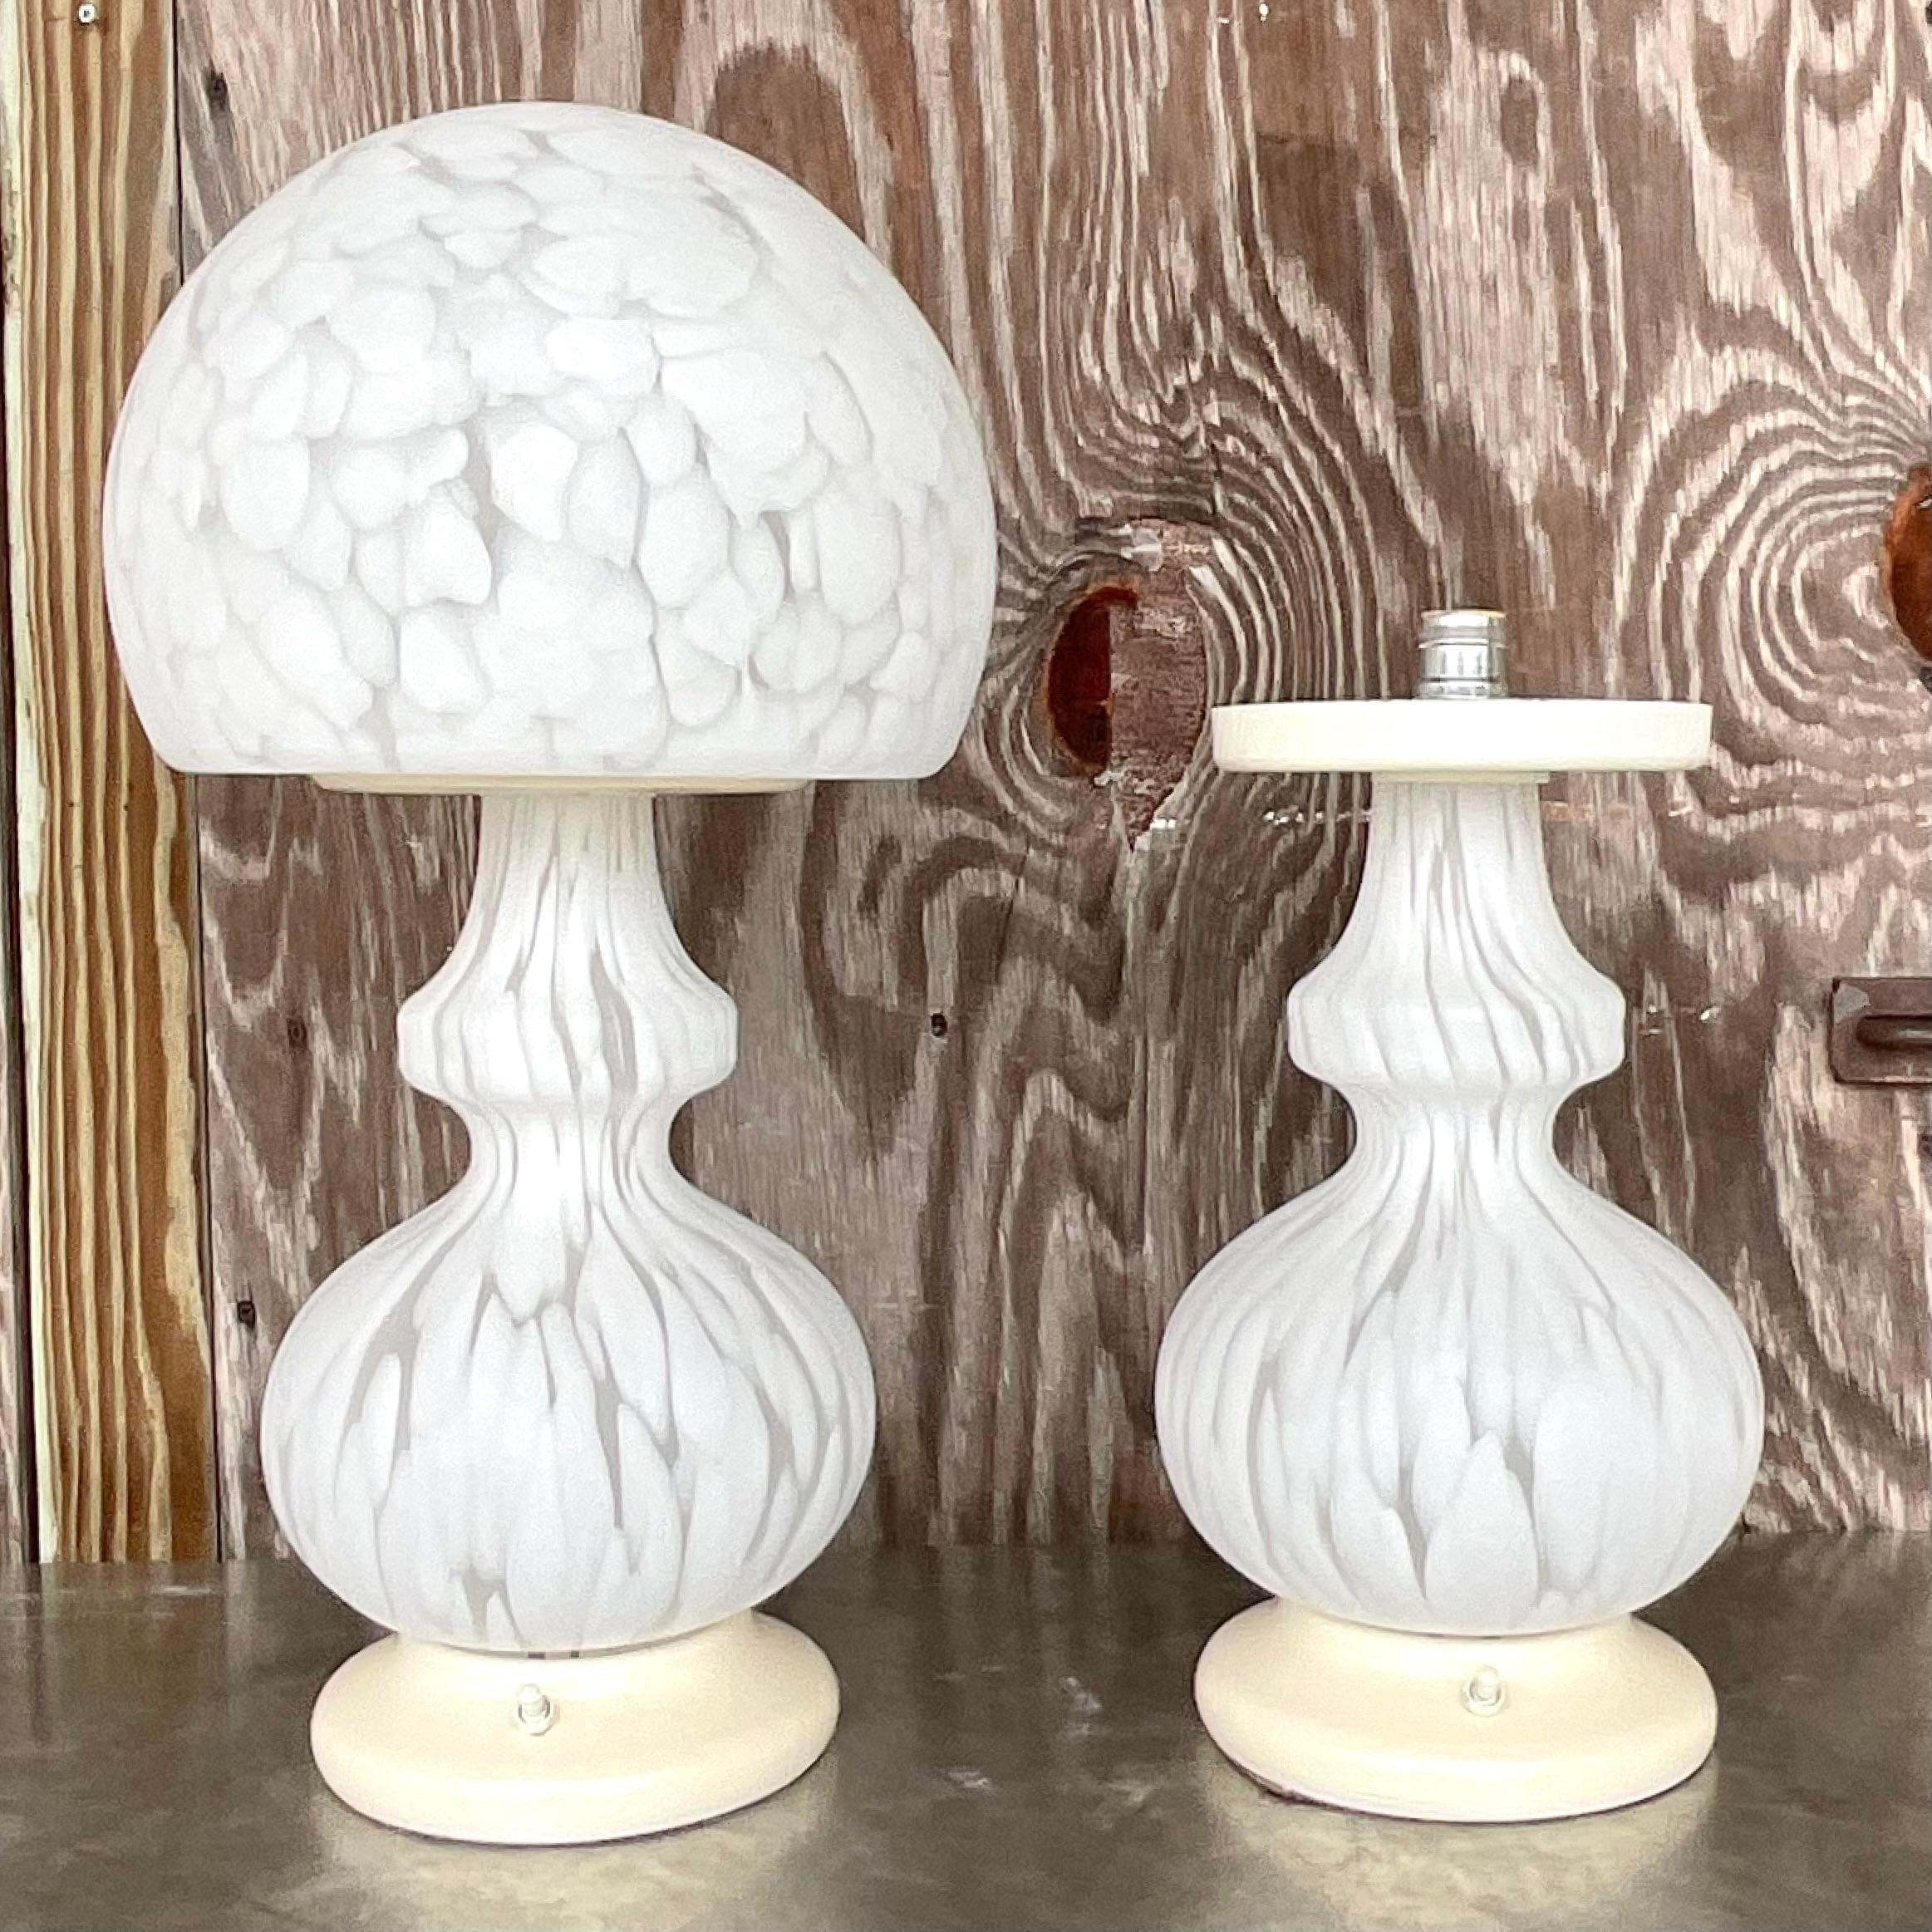 Illuminez votre espace avec sophistication en utilisant nos lampes Globe Sommerso en verre Murano Vintage pour Murano - Une paire. Ces lampes exquises mettent en valeur l'élégance intemporelle du design américain, alliant l'art du verre de Murano au